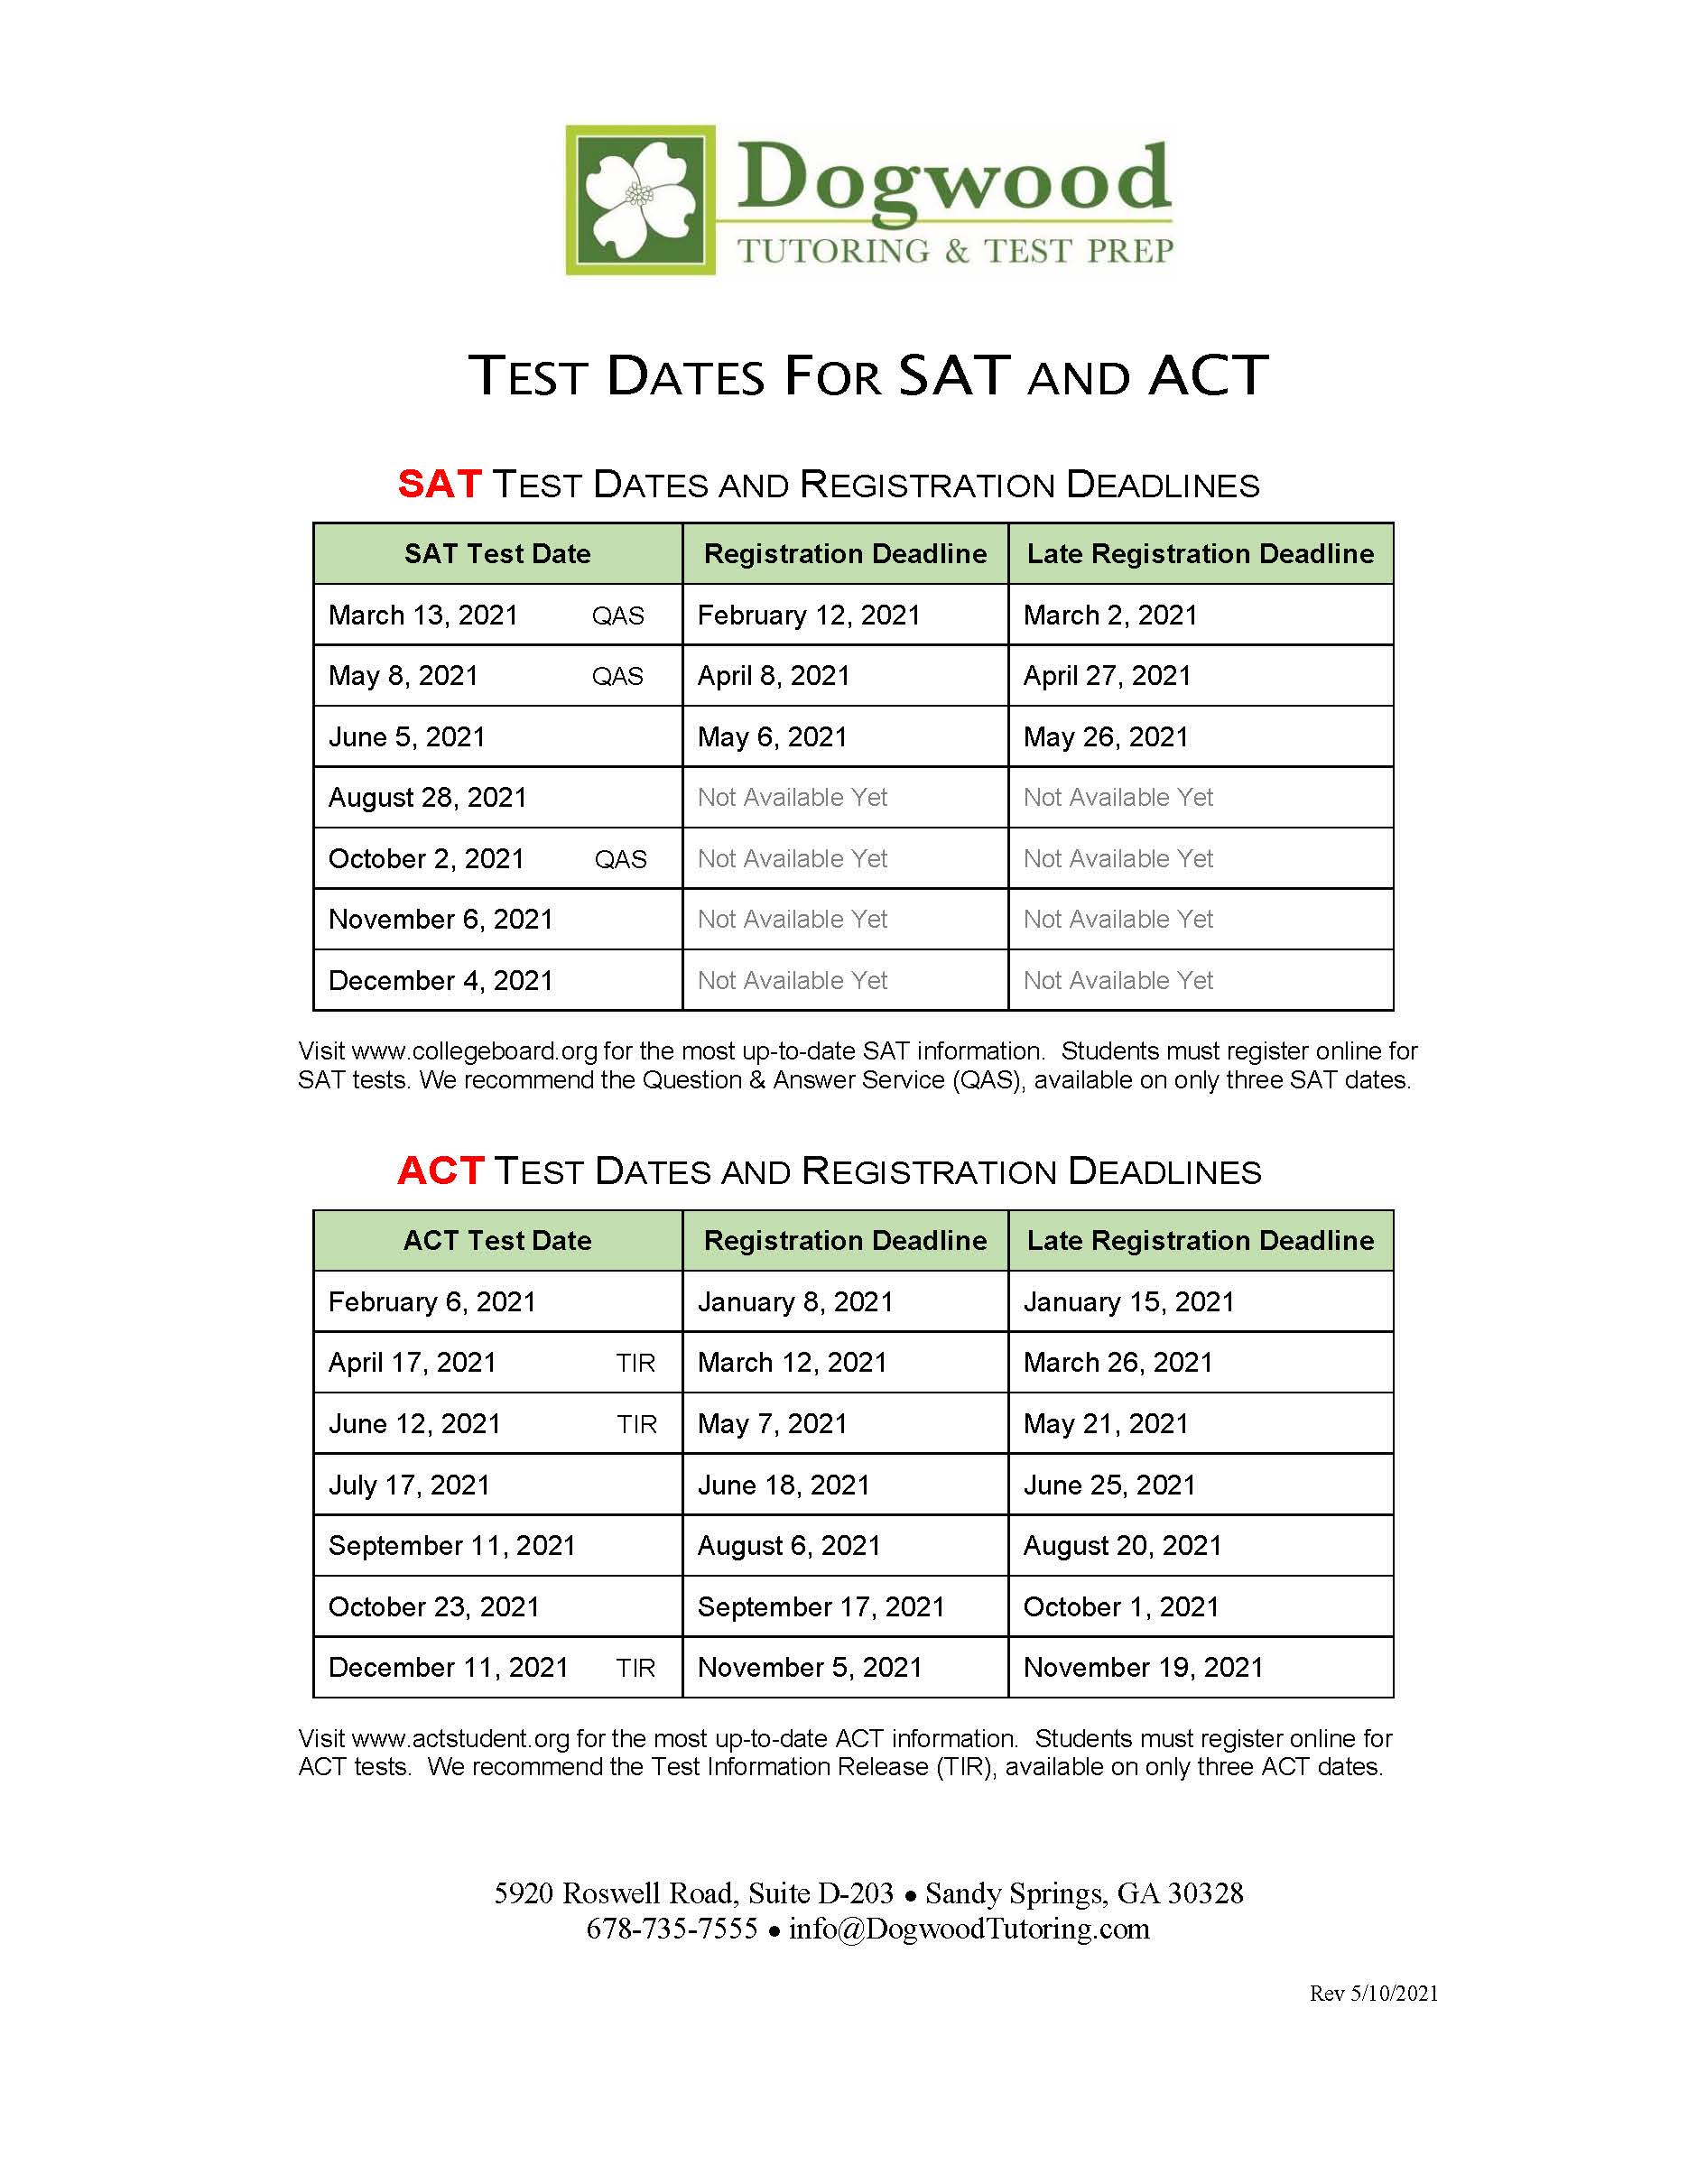 sat test dates